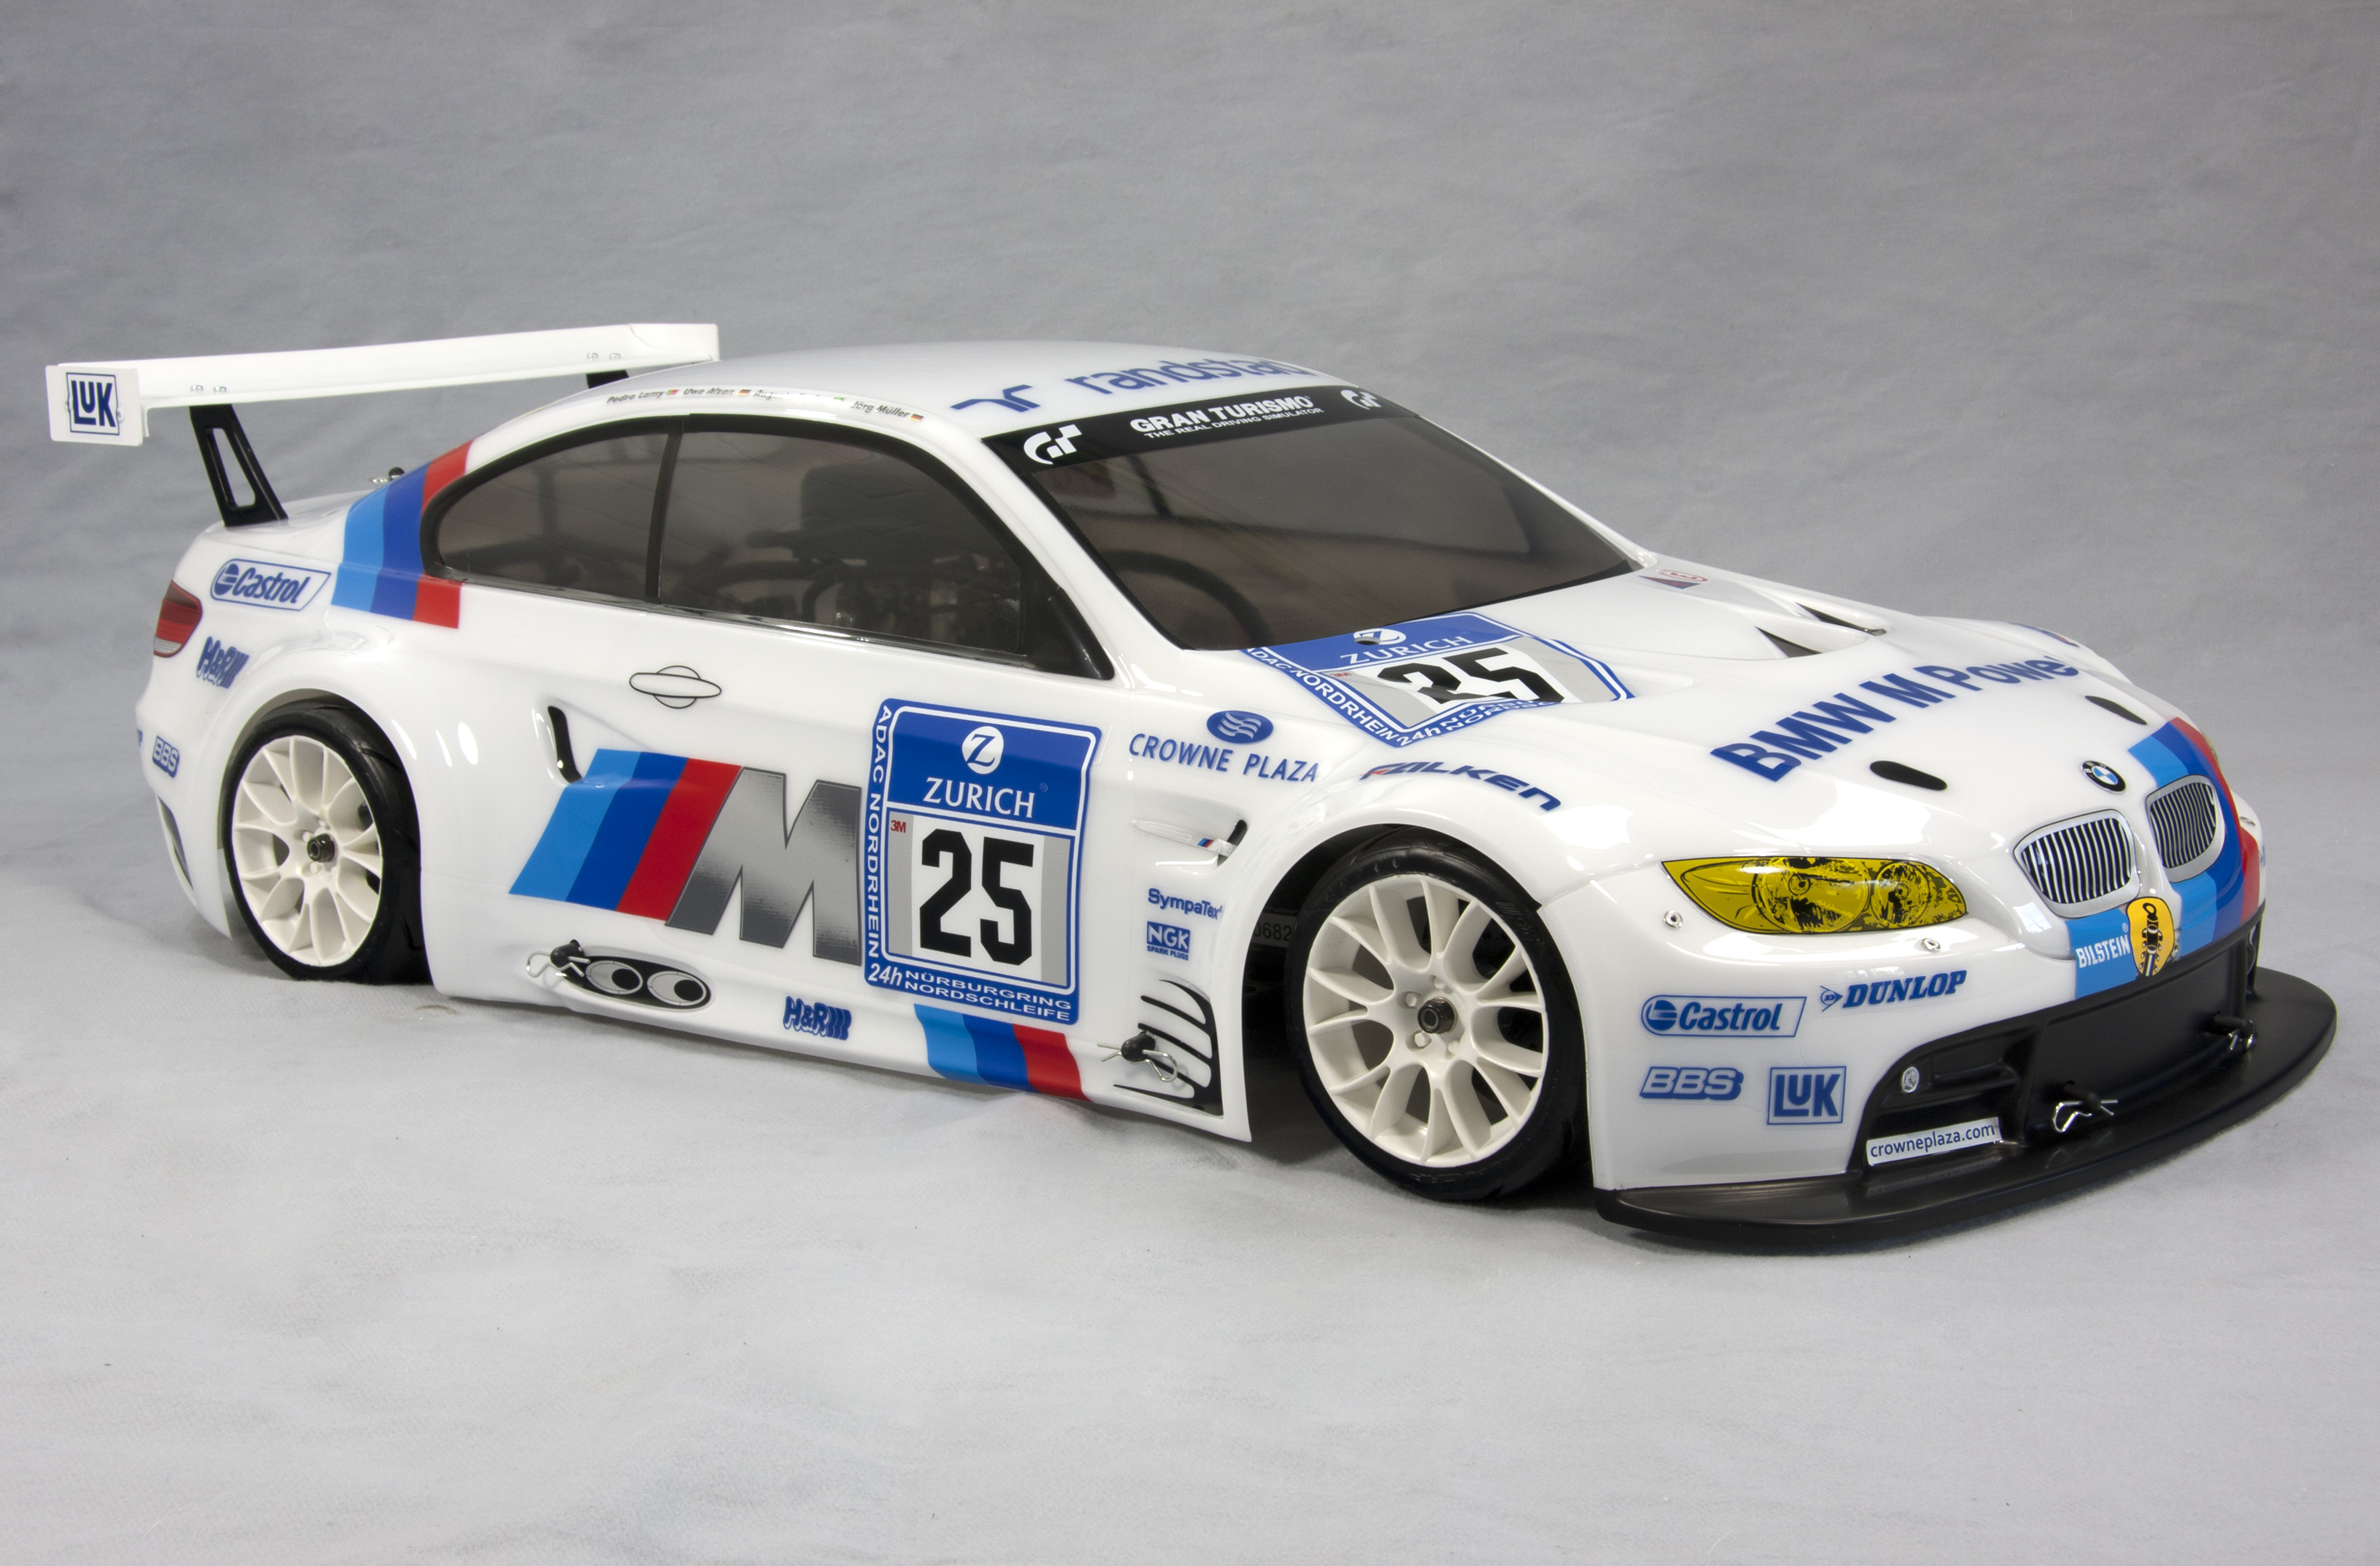 FG Raceline with BMW M3 ALMS body shell